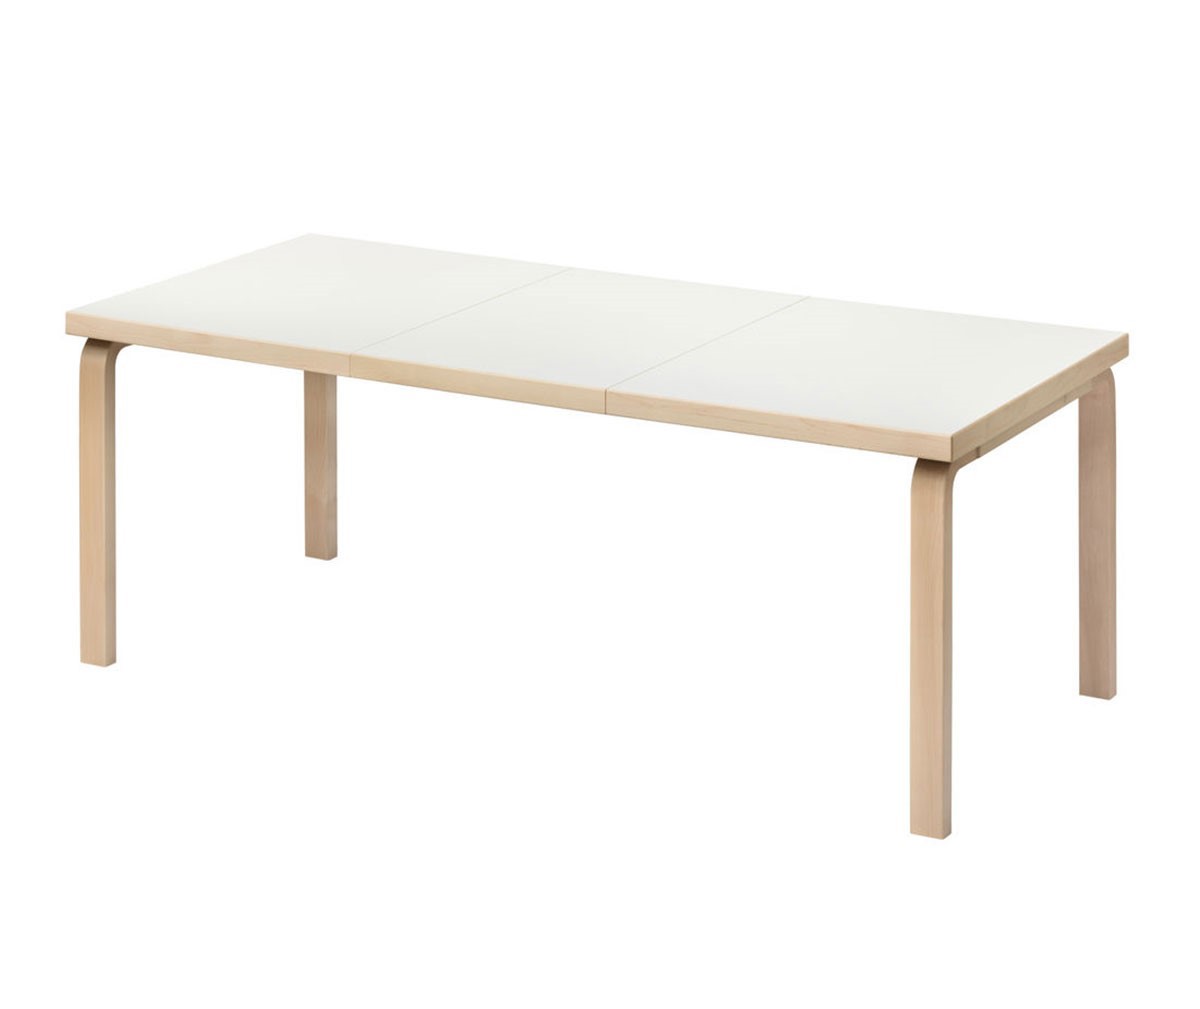 Artek Pöytä 97 koivu/valkoinen laminaatti, 85 x 135-190 cm